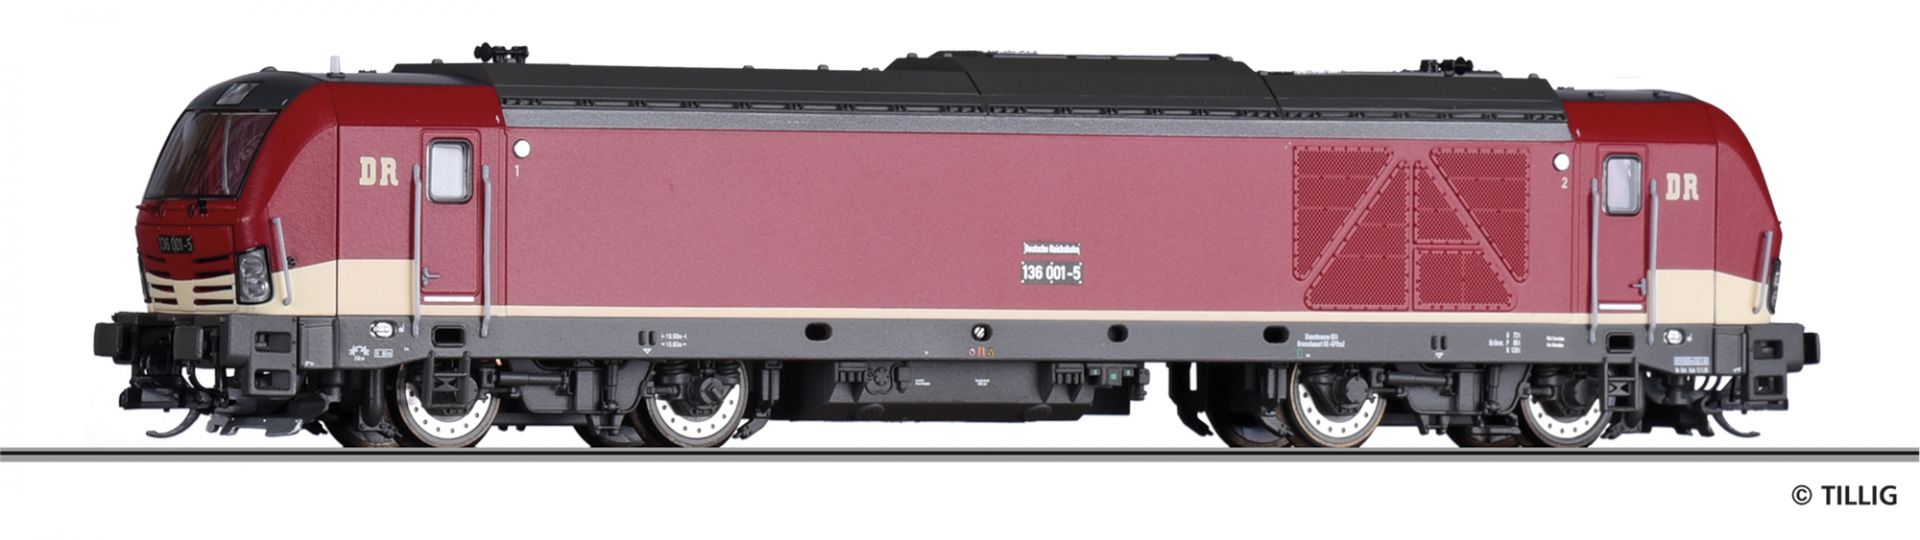 501965 | Diesellokomotive DR -werksseitig ausverkauft-